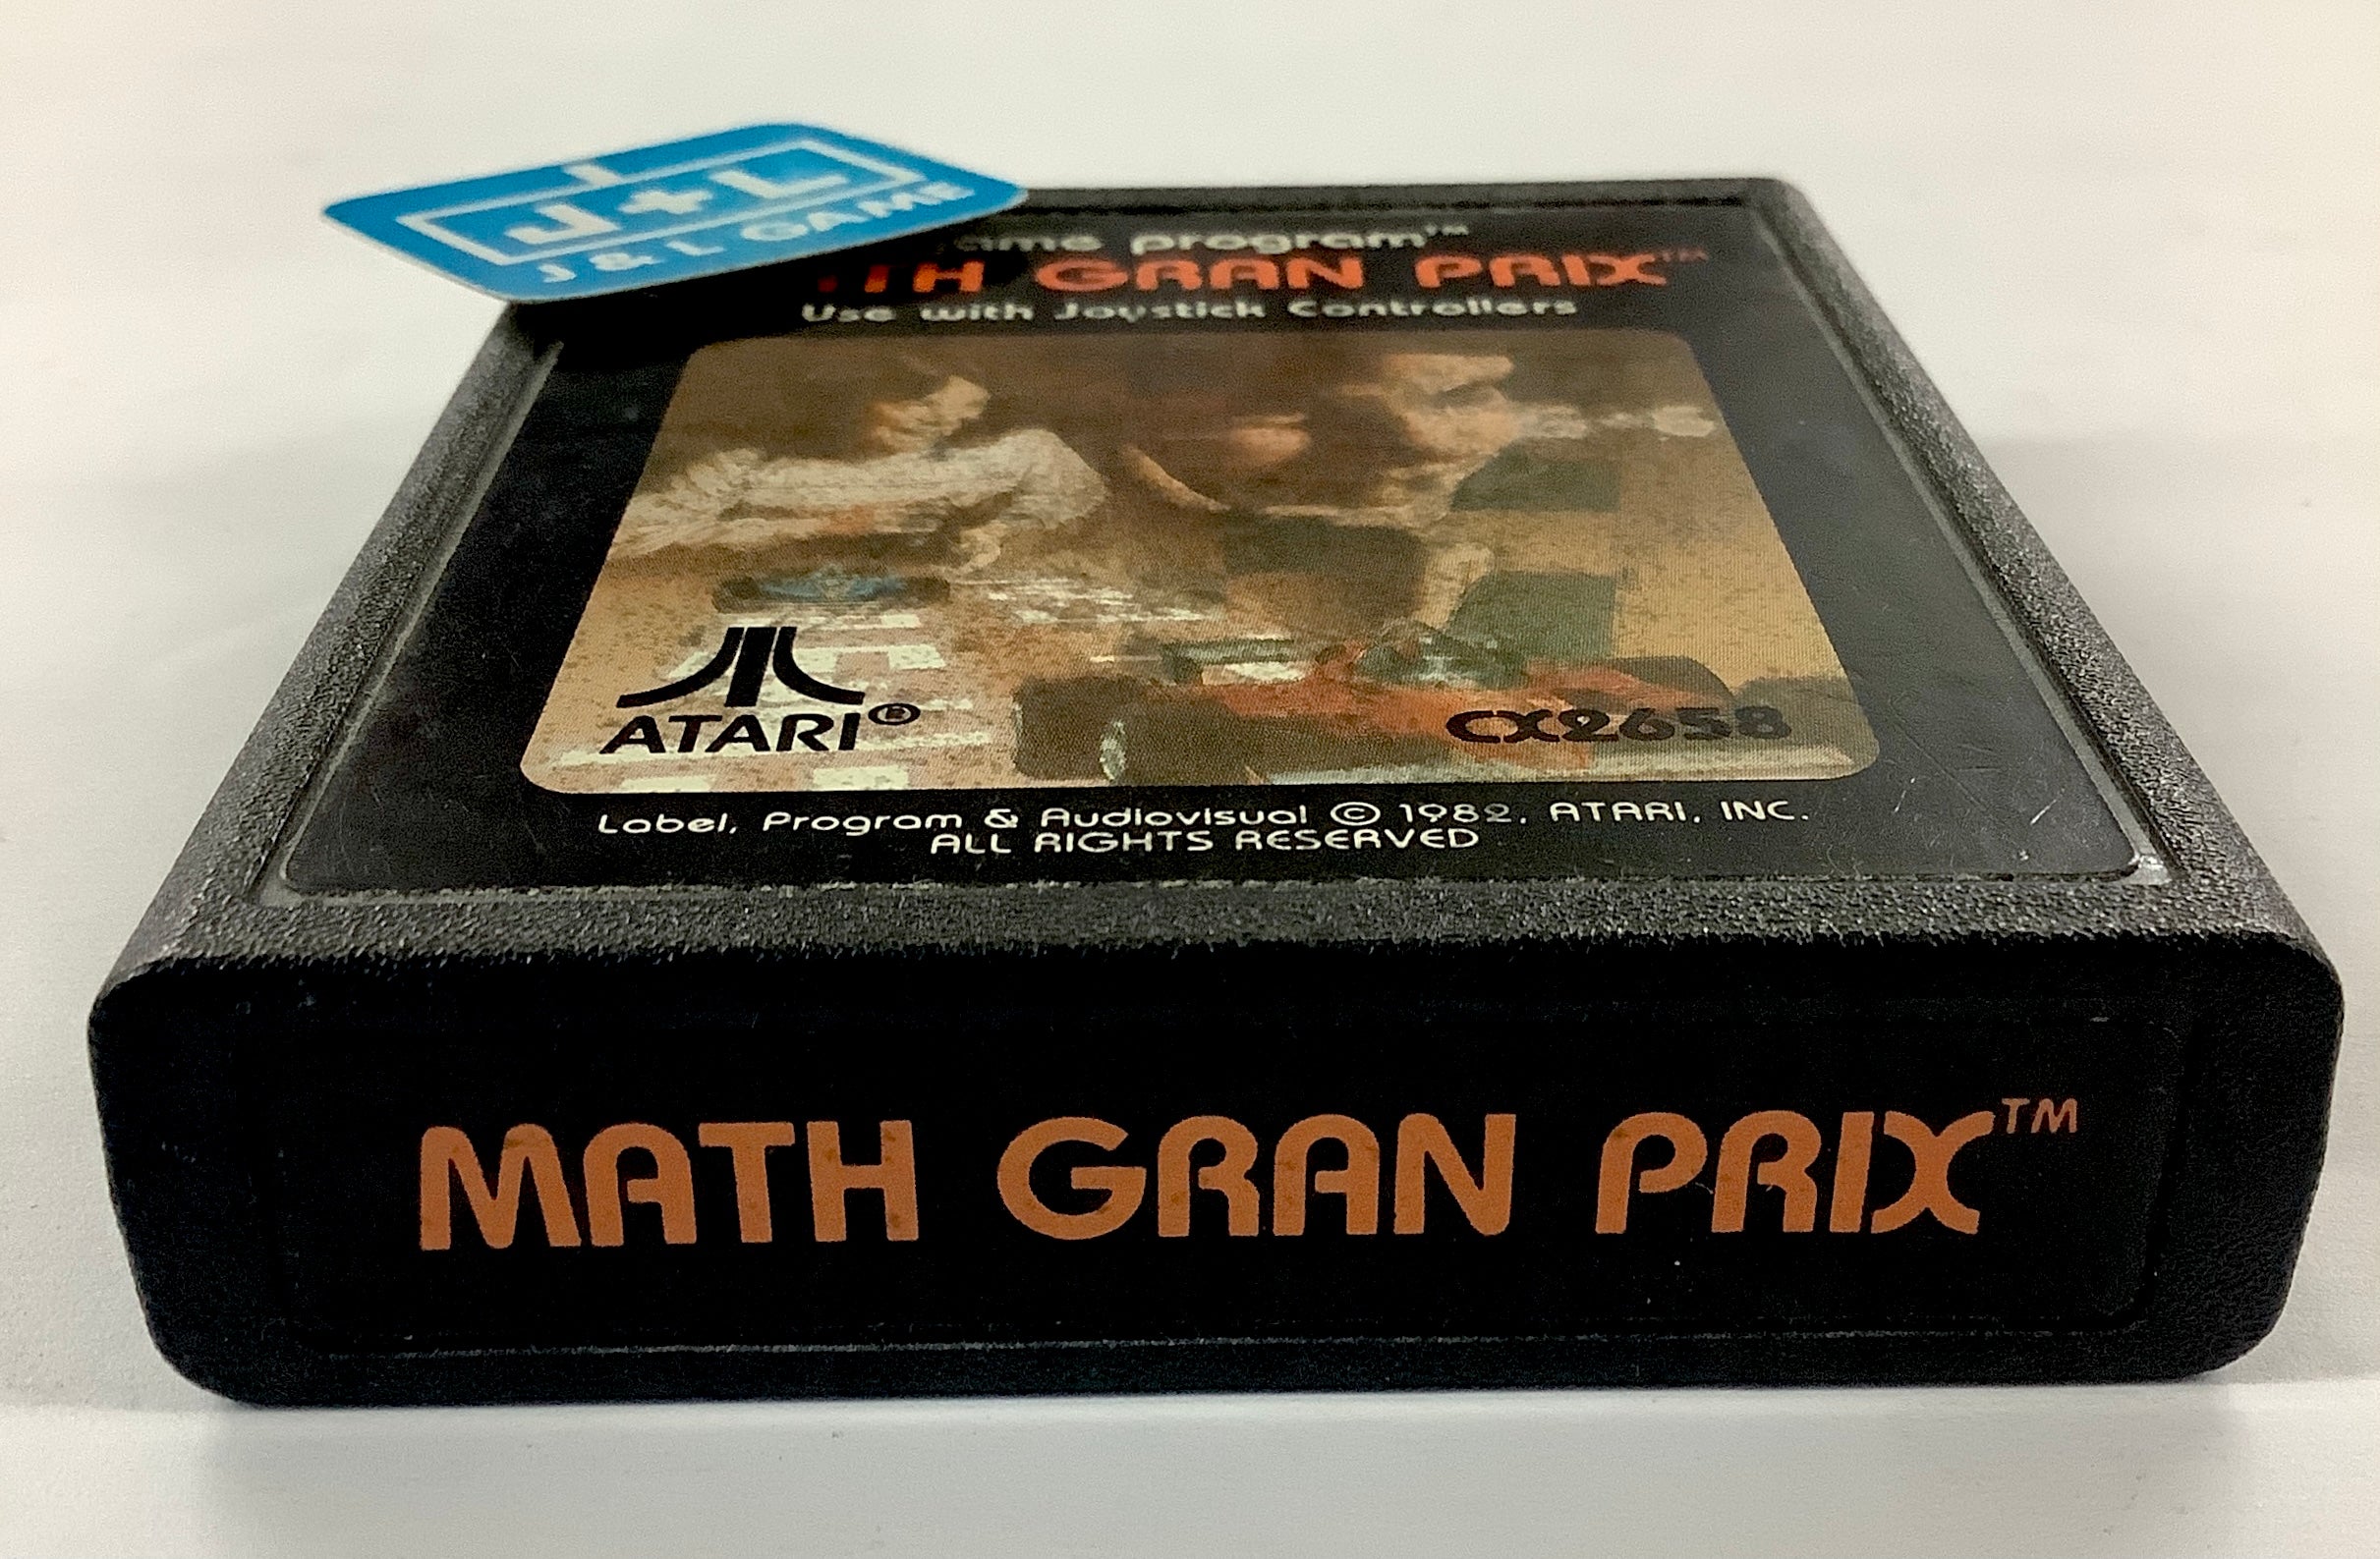 Math Gran Prix - Atari 2600 [Pre-Owned] Video Games Atari Inc.   